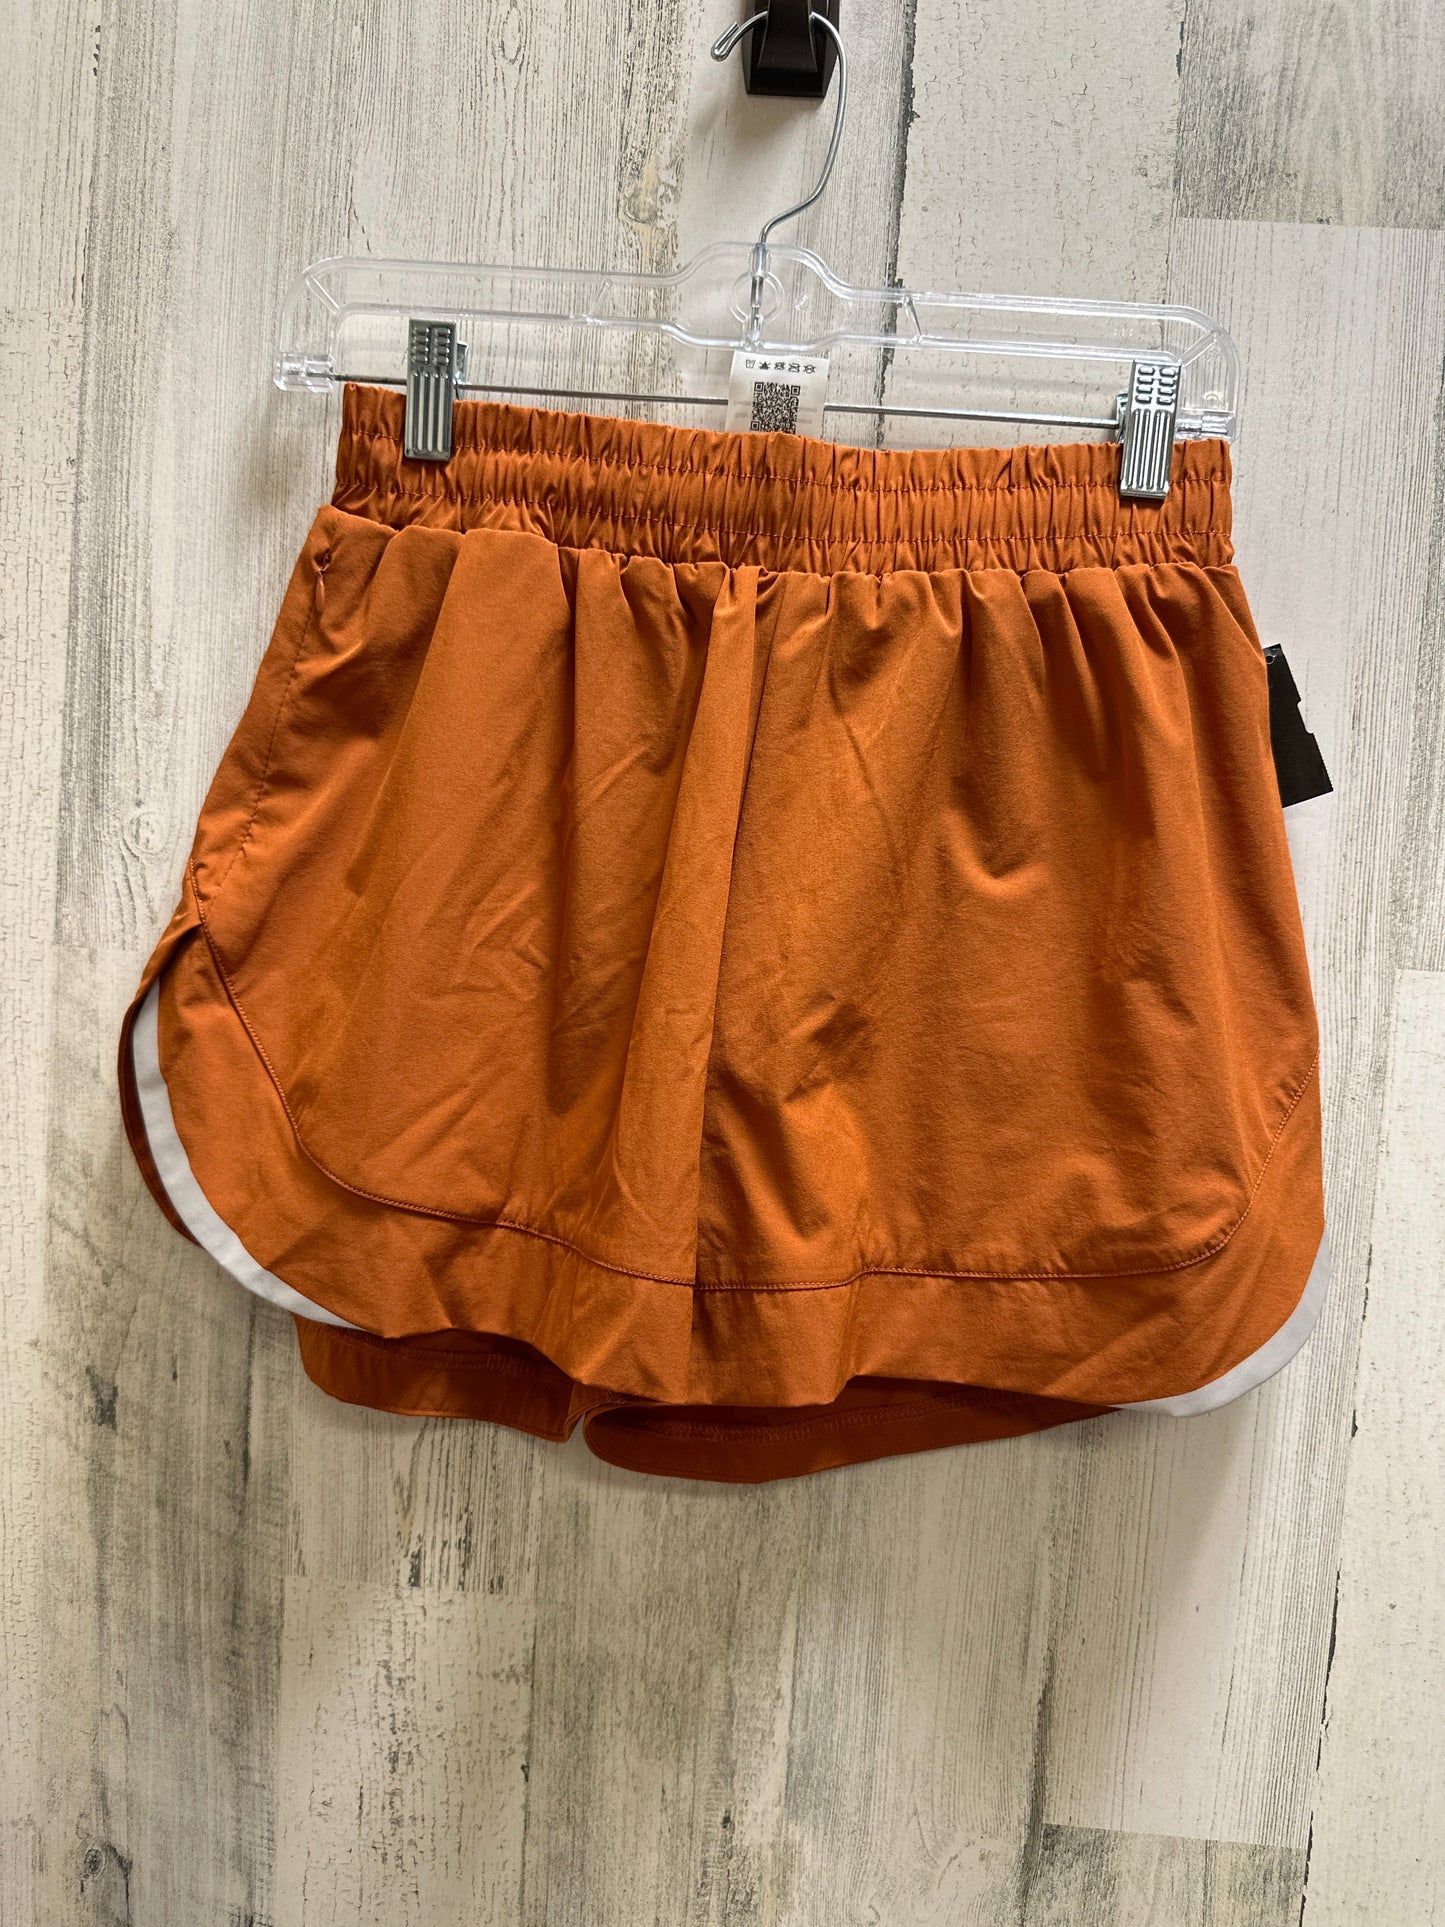 Orange Athletic Shorts Alpine Tek, Size S